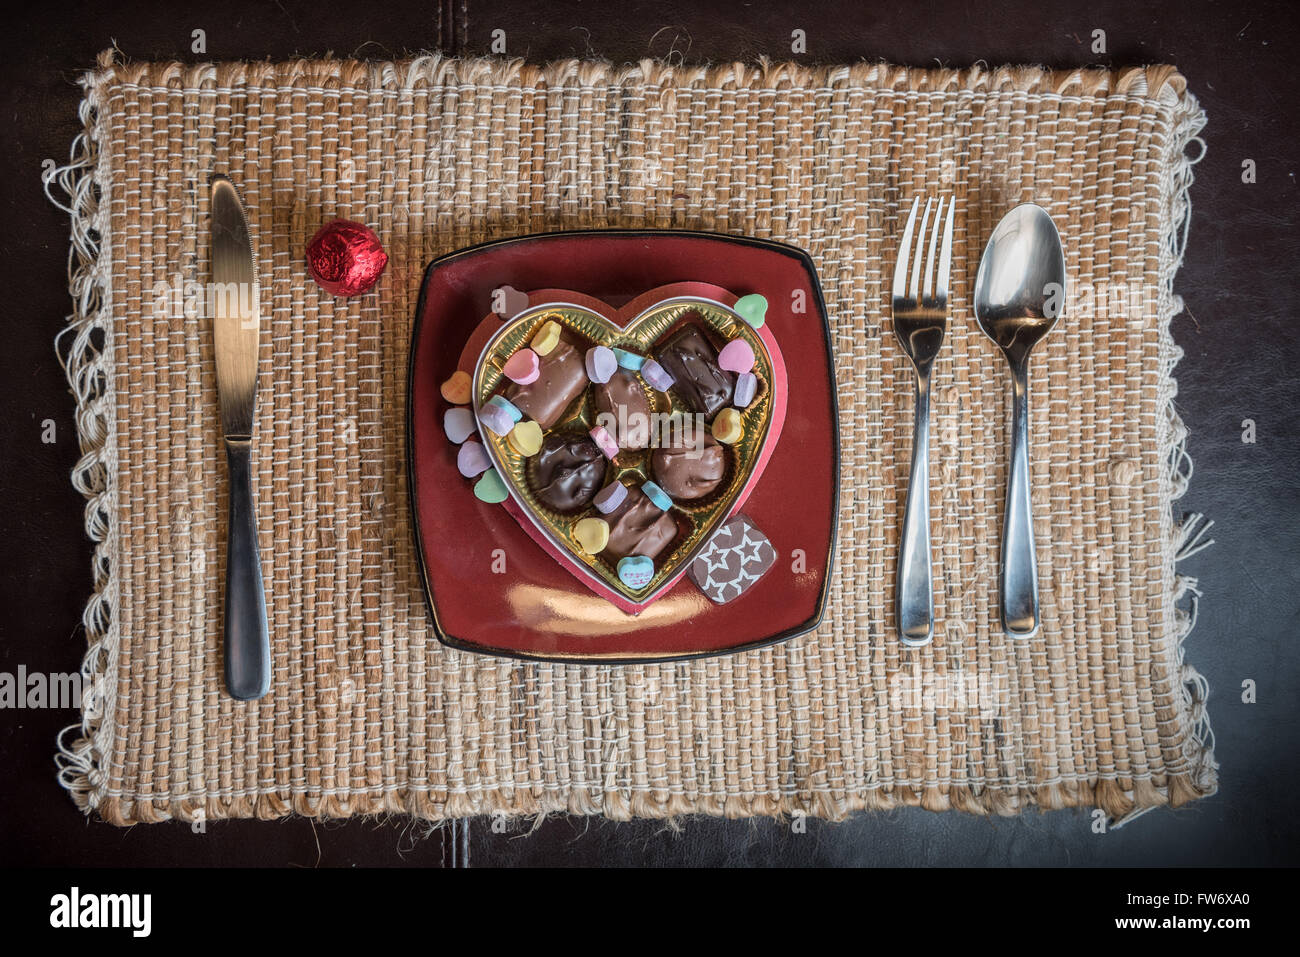 Saint Valentin chocolats et bonbons sur une plaque Banque D'Images